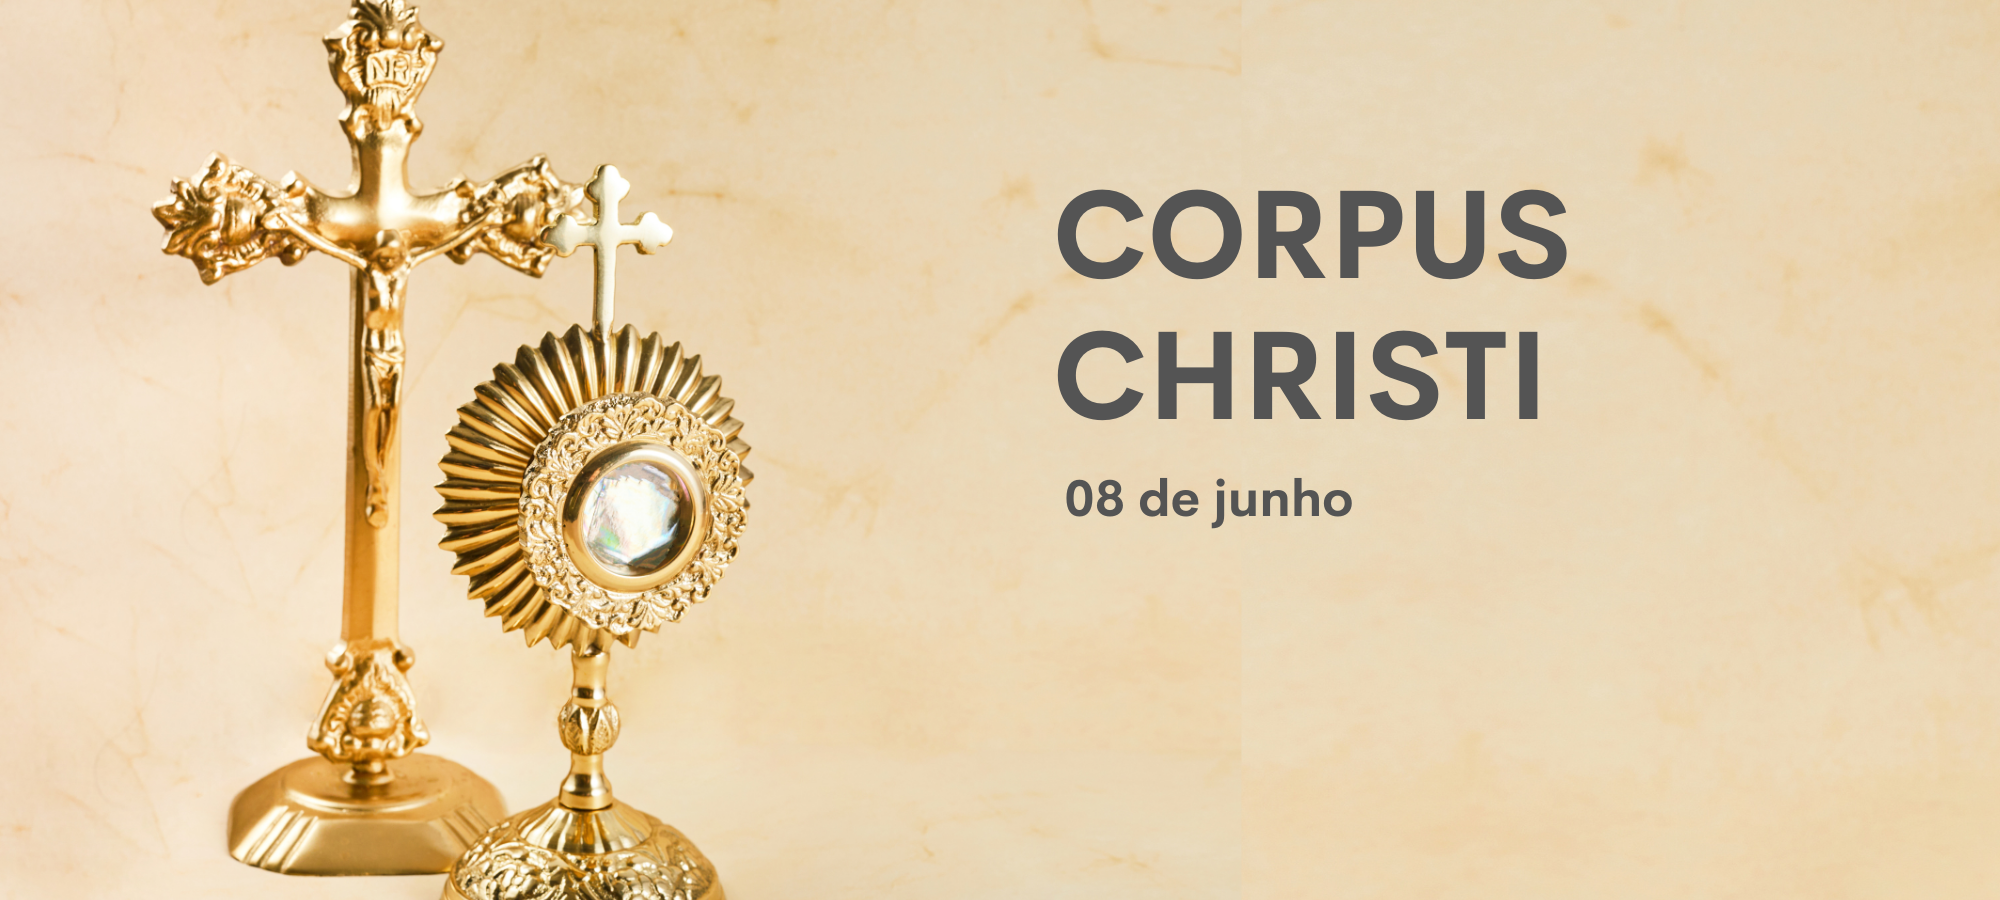  基督圣体日在巴西到底算不算公共假日？